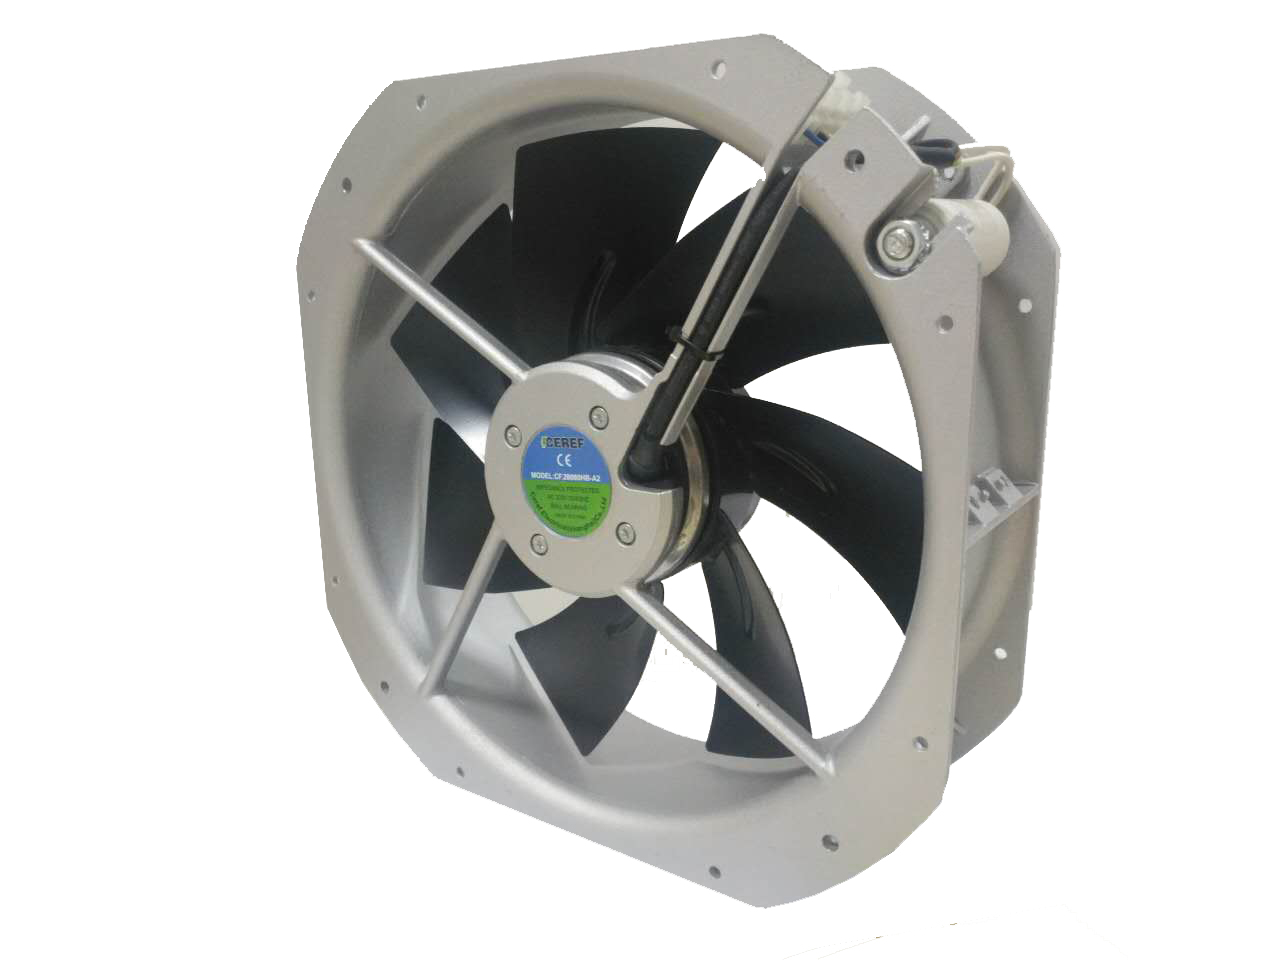 替代卡固充电桩风机 消毒柜散热风机 环境监测设备风扇 CF.28080HB-A2 舍利弗CEREF